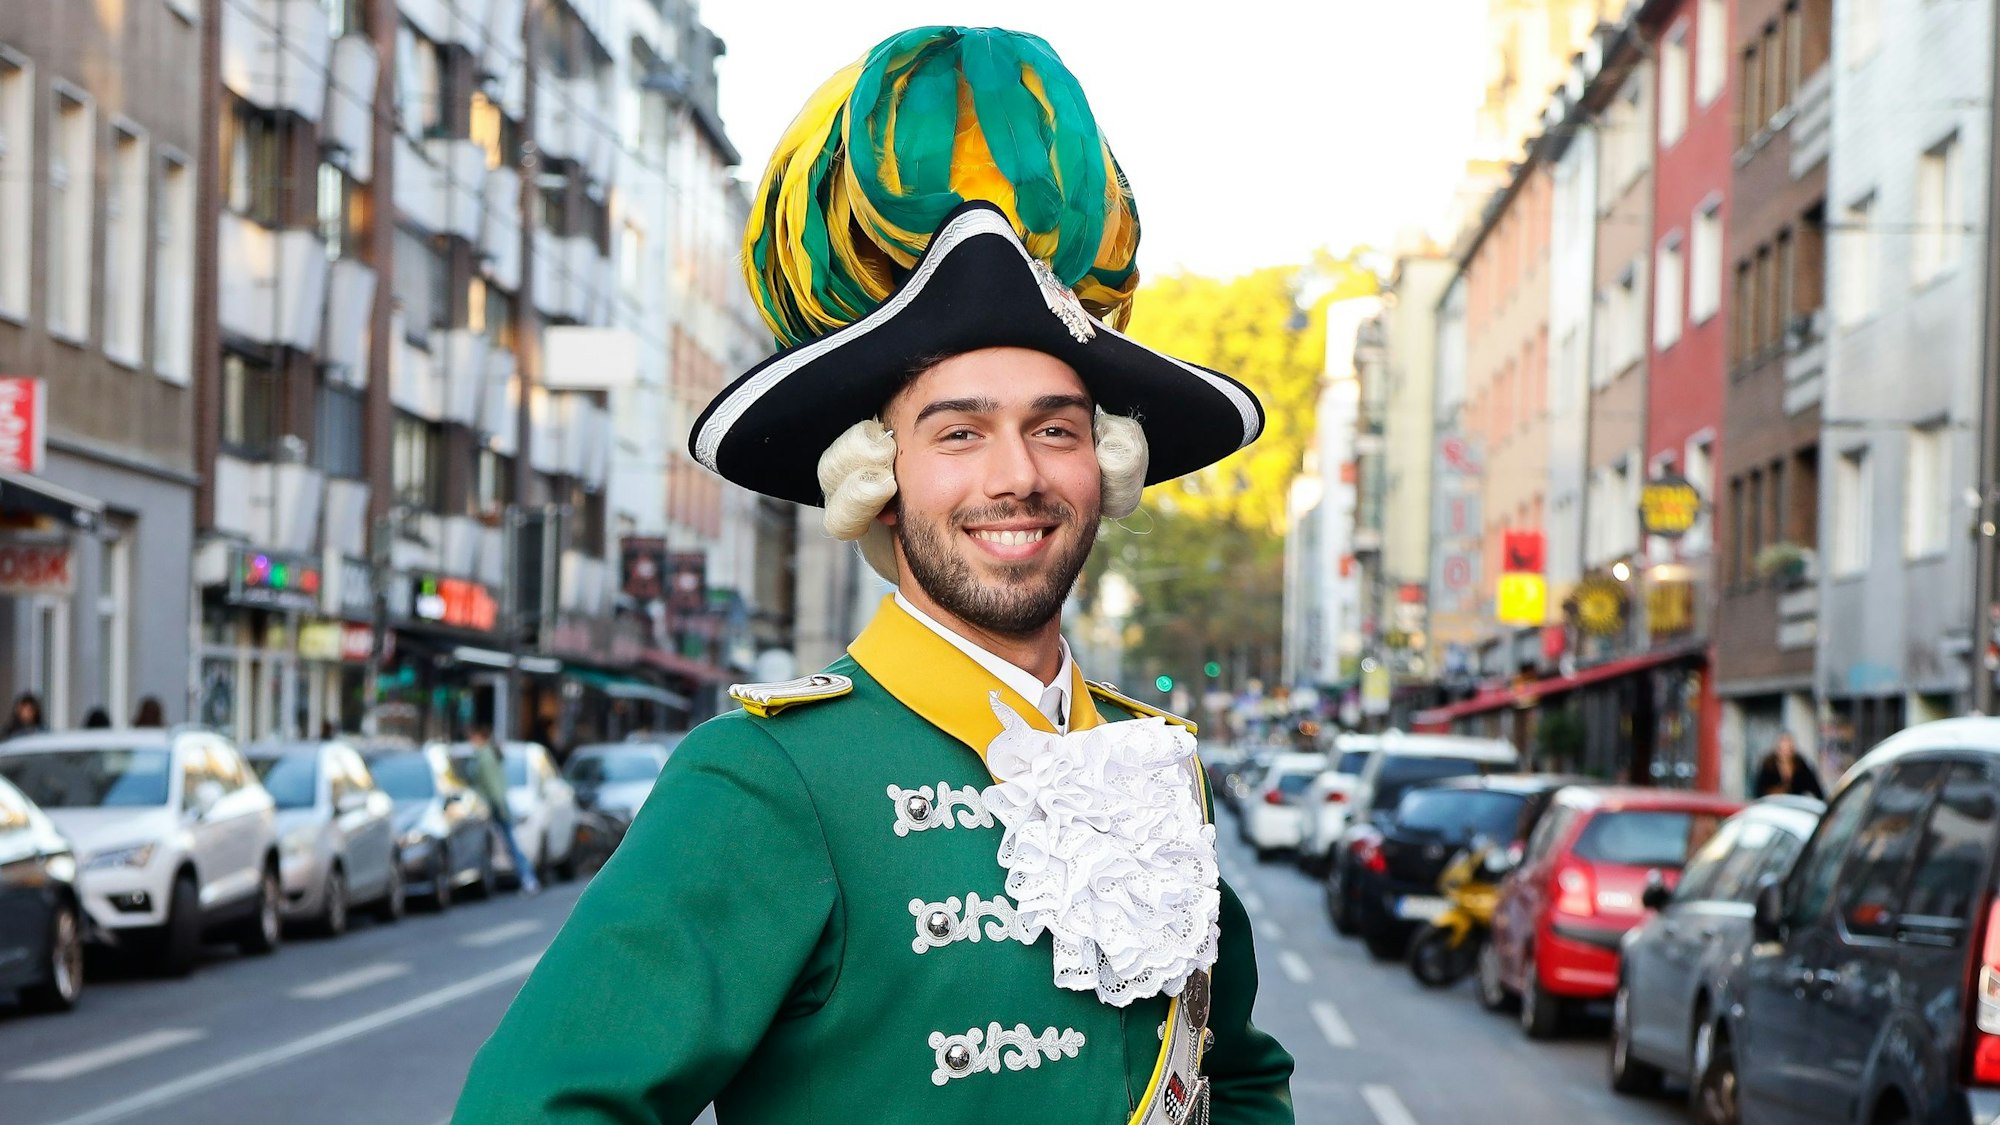 Davide Giangualano in der grün-gelben Unifor der Kölner Karnevalsgesellschaft "Ehrengarde" auf der Zülpicher Strasse.